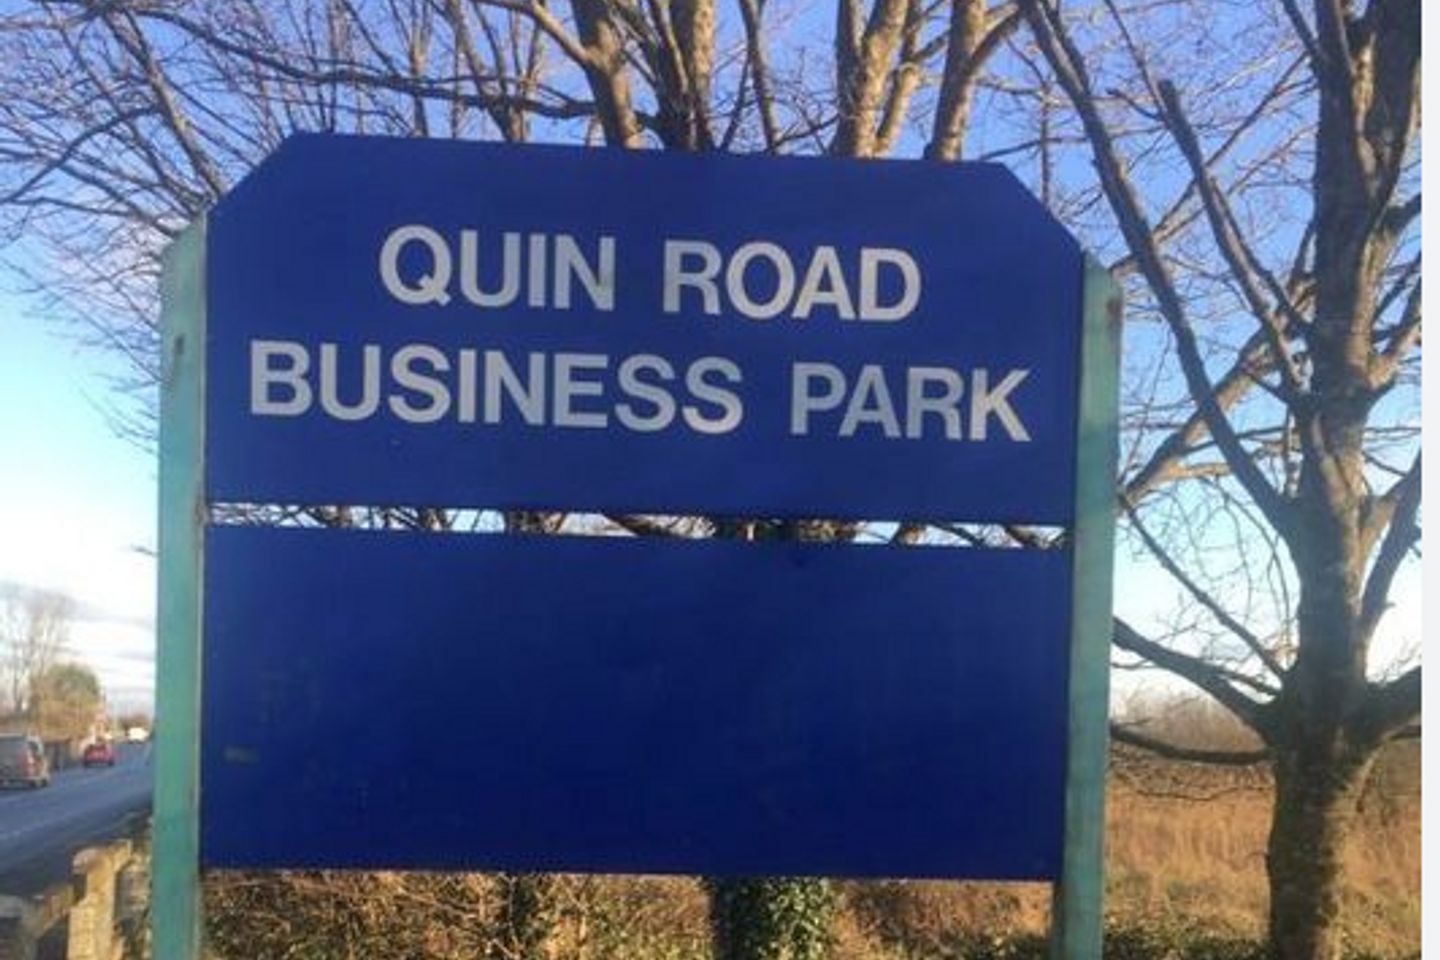 Quin Road Business Park, Ennis, Co. Clare